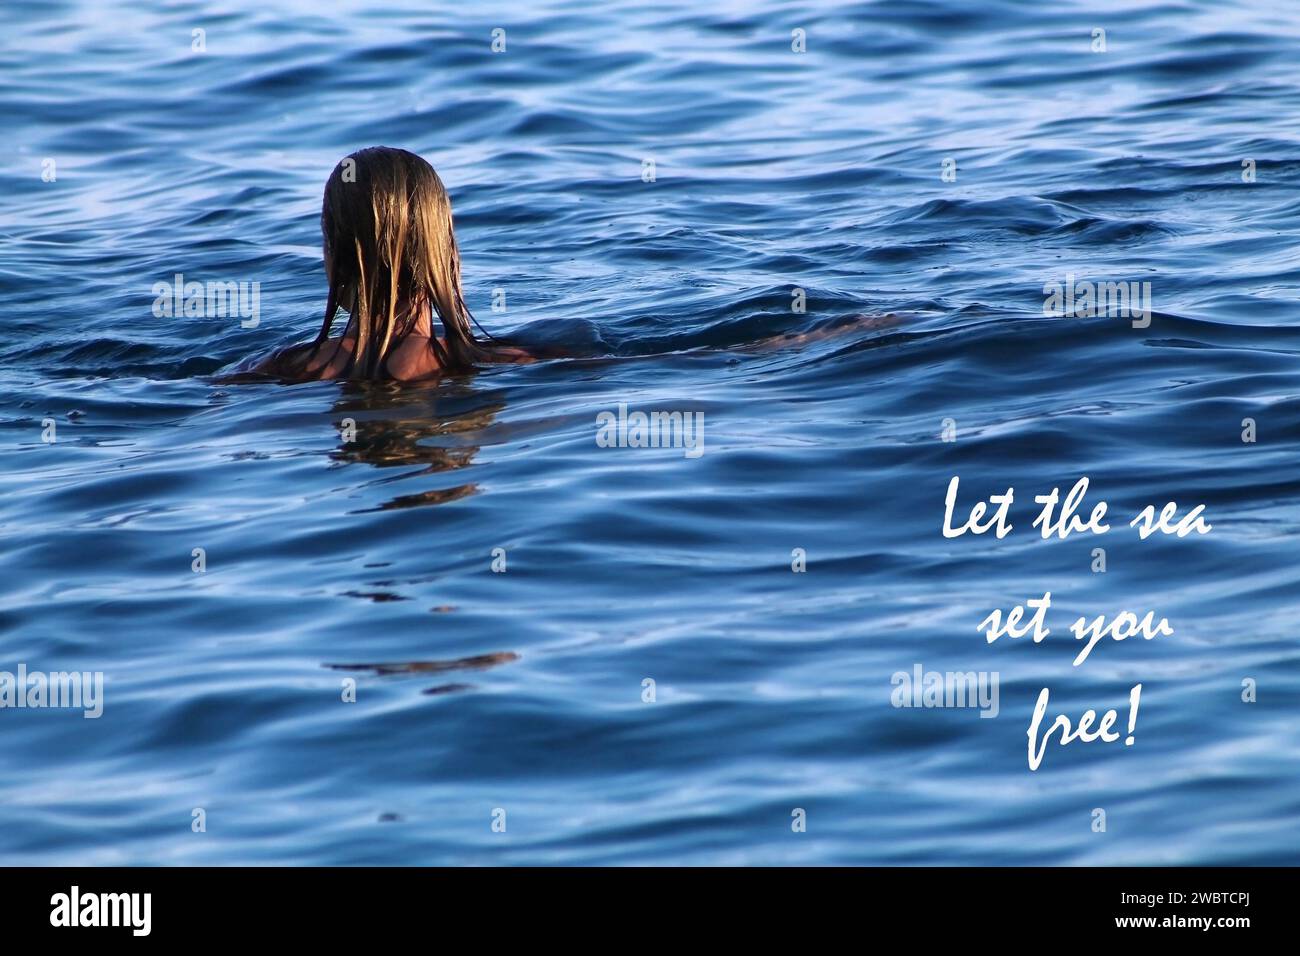 Una donna bionda che nuota nel mare con una citazione ispiratrice, lascia che il mare ti liberi. Foto Stock